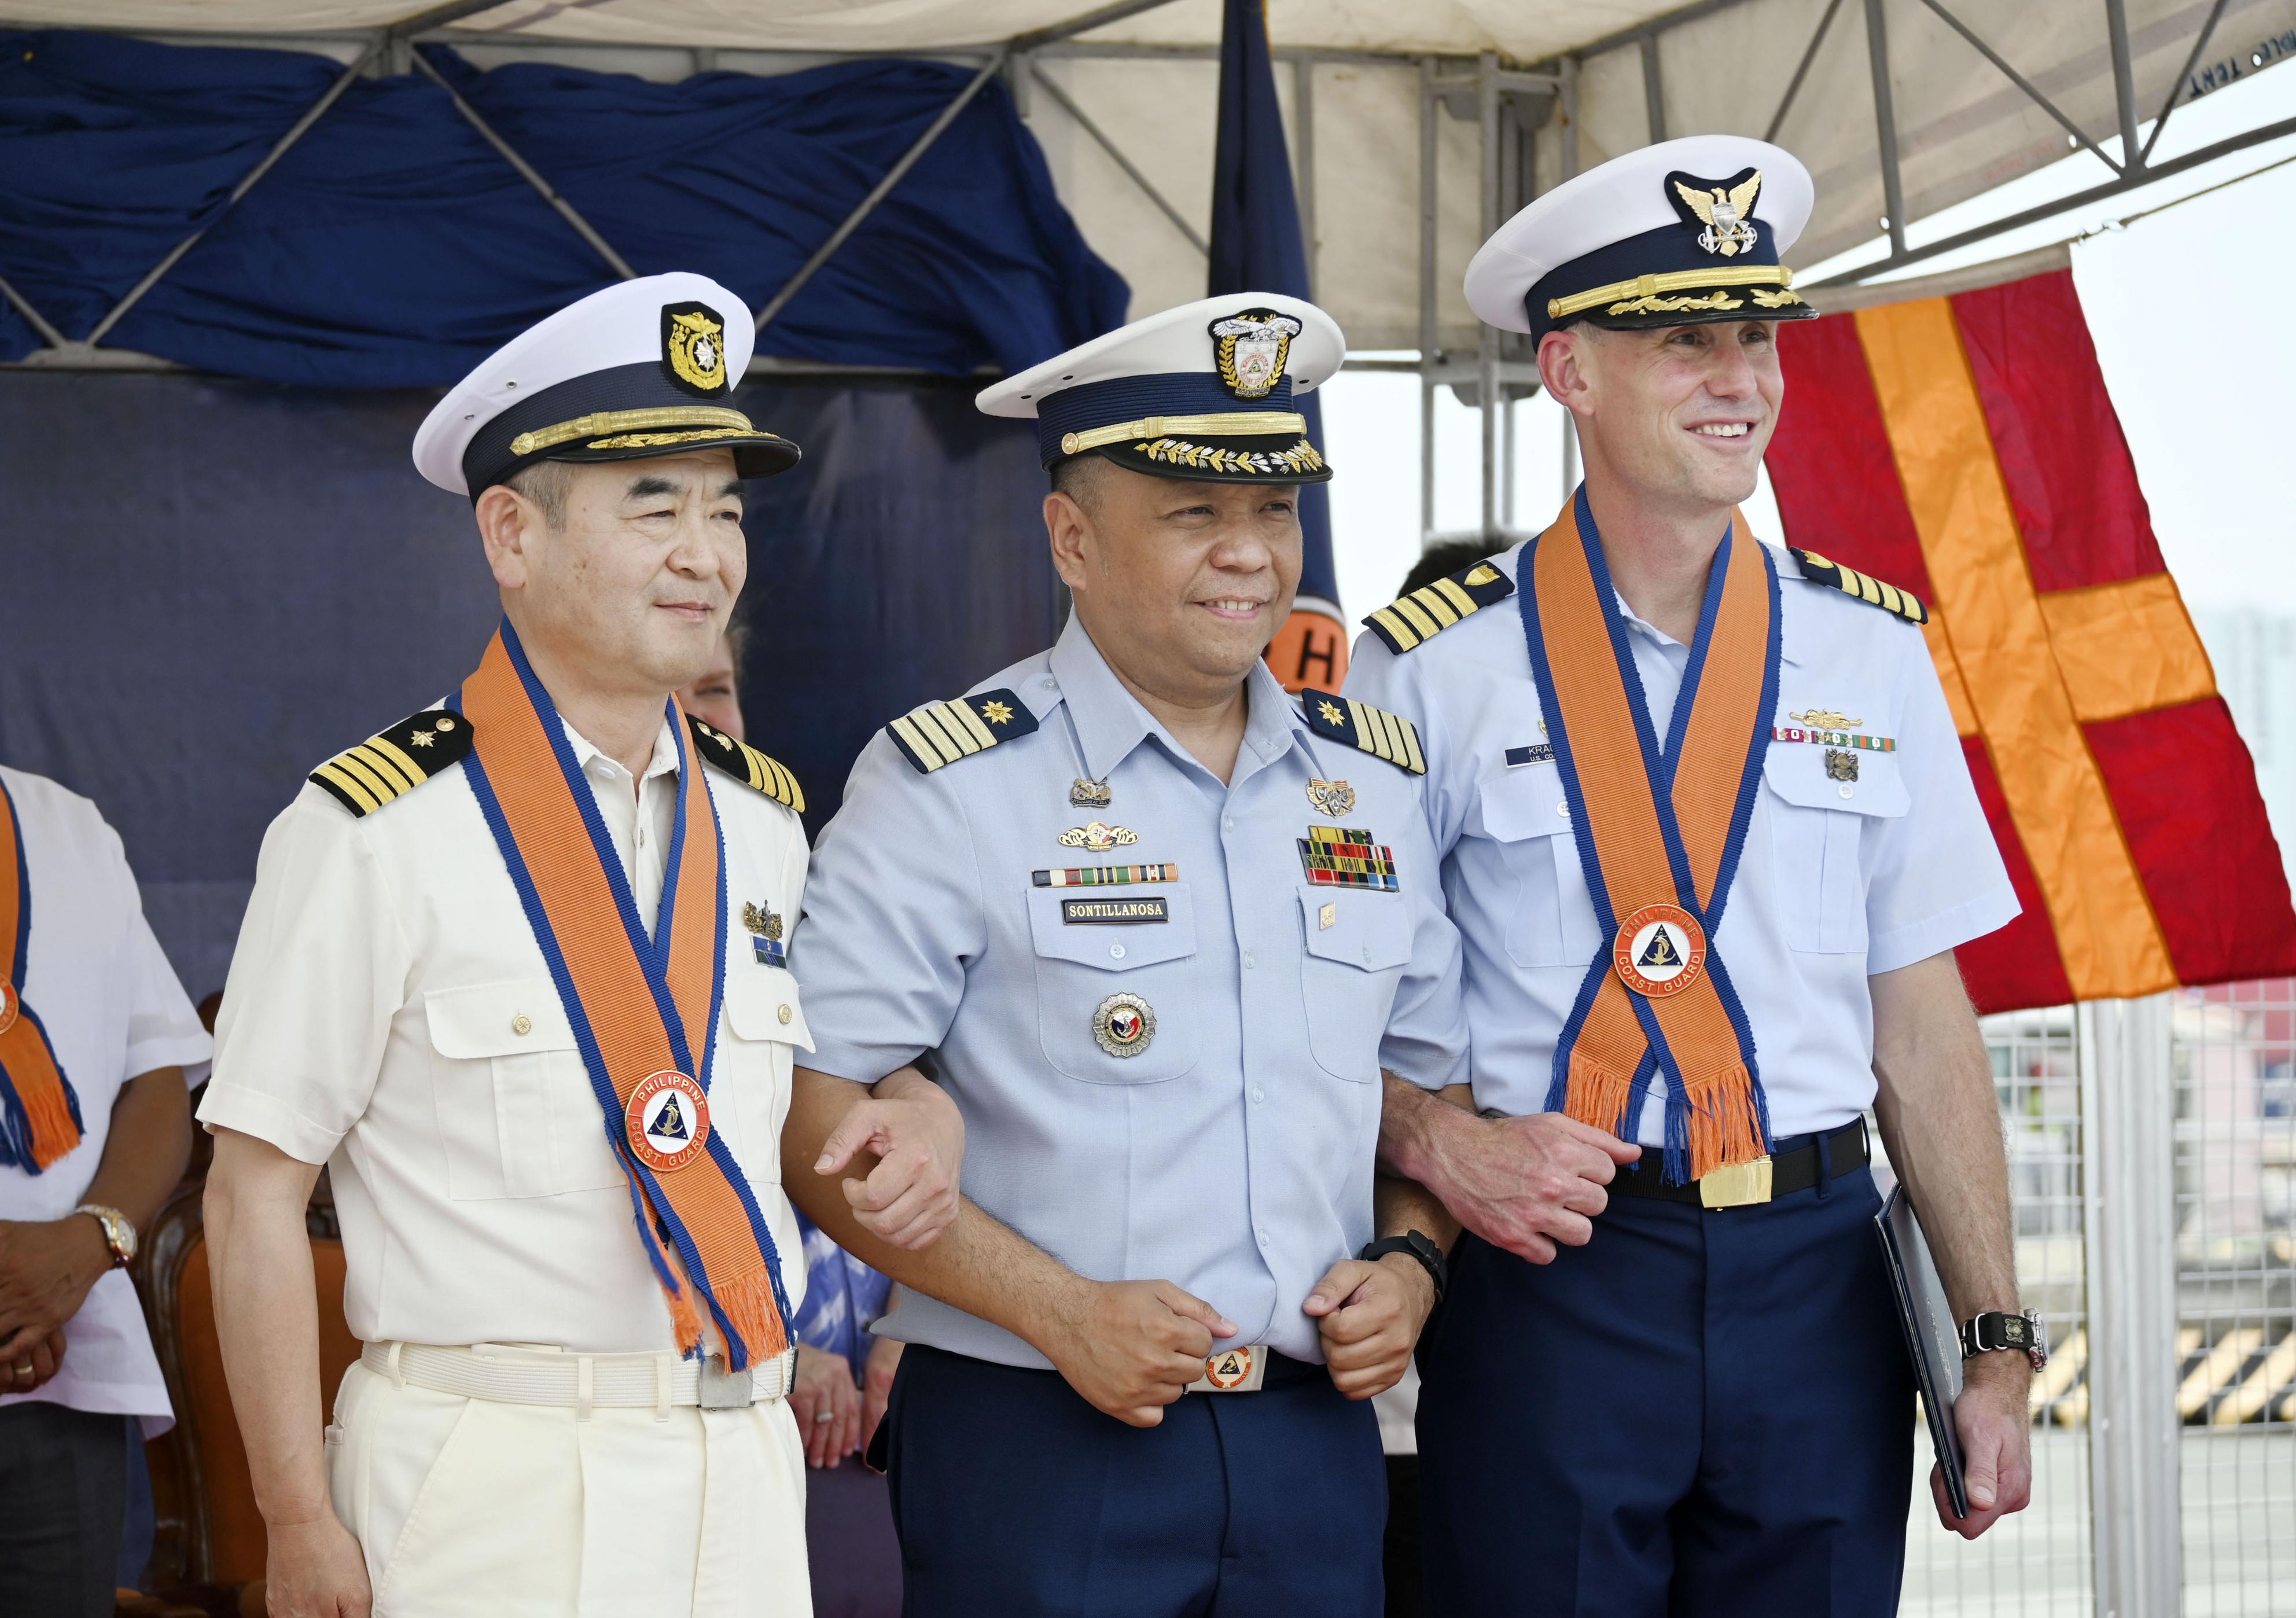 日米巡視船がマニラ到着 中国対応へ初の合同訓練 - 産経ニュース